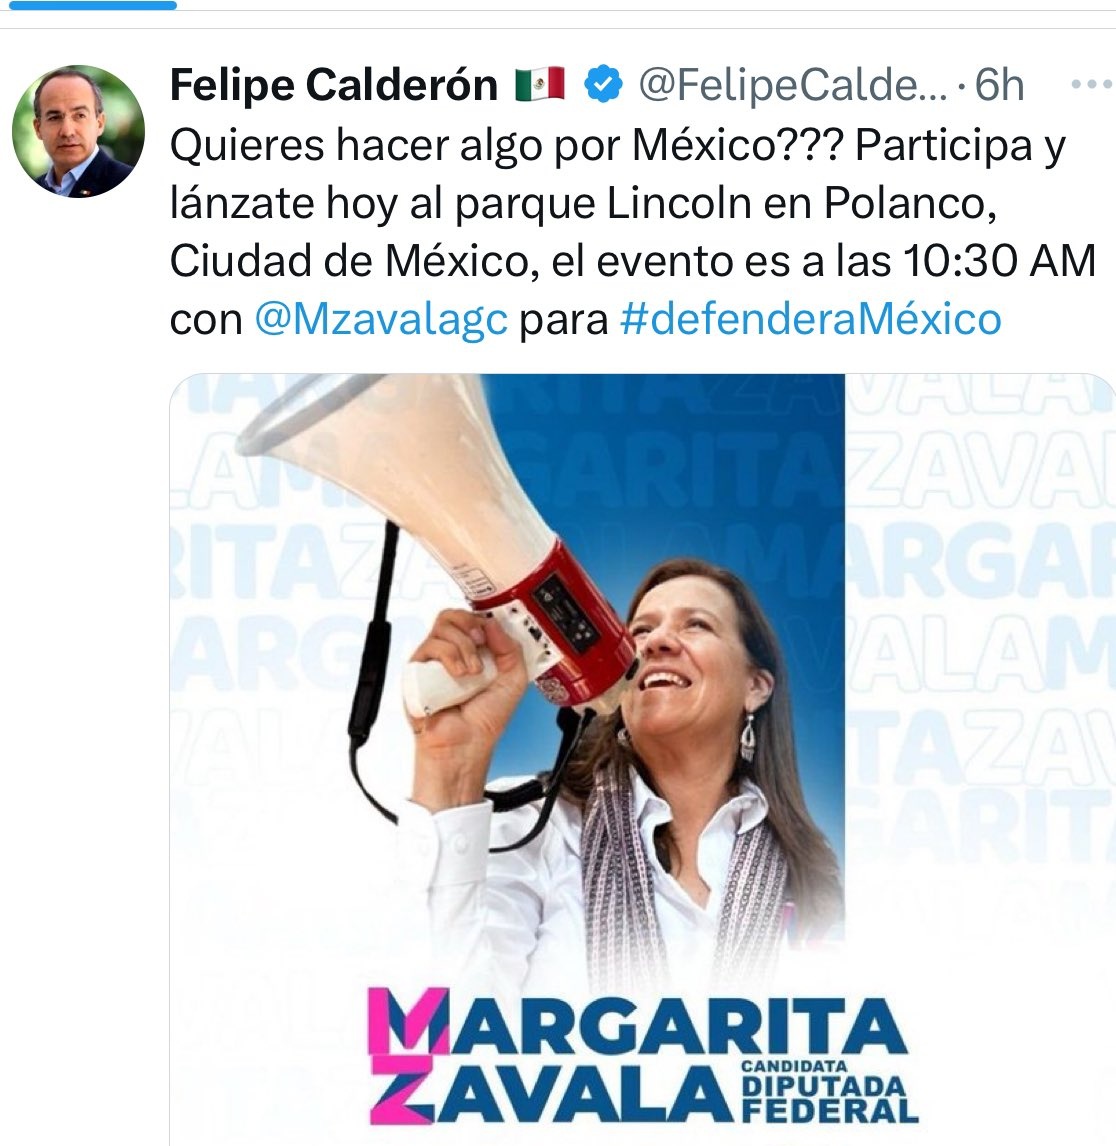 Felipe Calderón invita a los eventos de su esposa, si, desde España donde sigue escondido hasta que García Luna lo empine como responsable de encabezar un narcogobierno. 

Si gana Claudia en 6 años seguiremos sin verle la cara.   ¡el miedo no anda en burro!